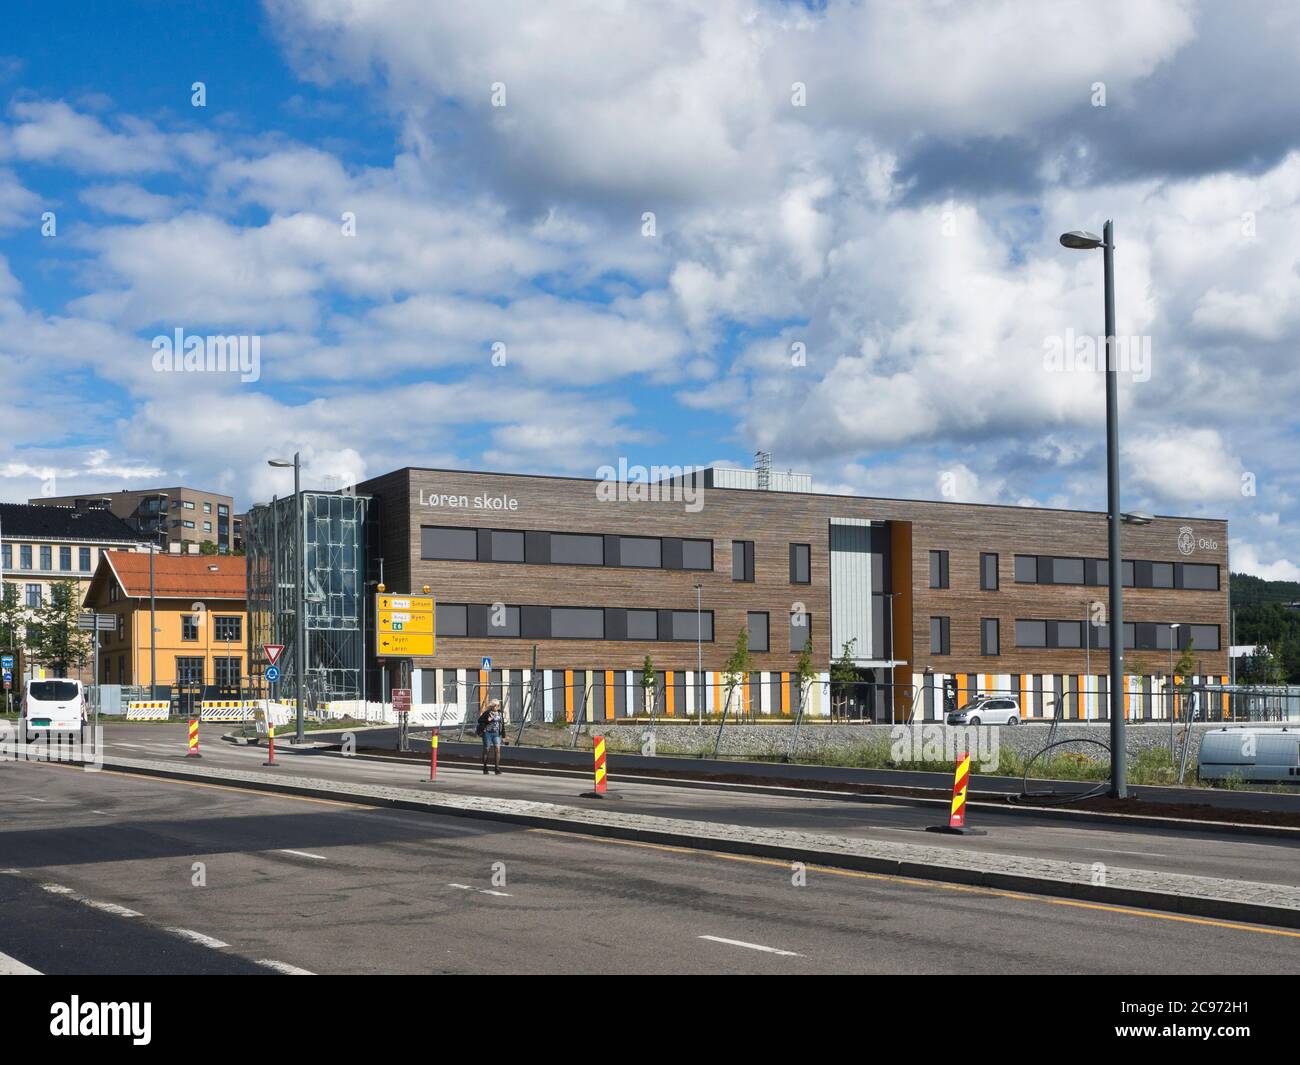 Nuova ala della scuola primaria Loren in via di sviluppo Sobborgo di Oslo Norvegia con una moderna facciata in pannelli di legno Foto Stock